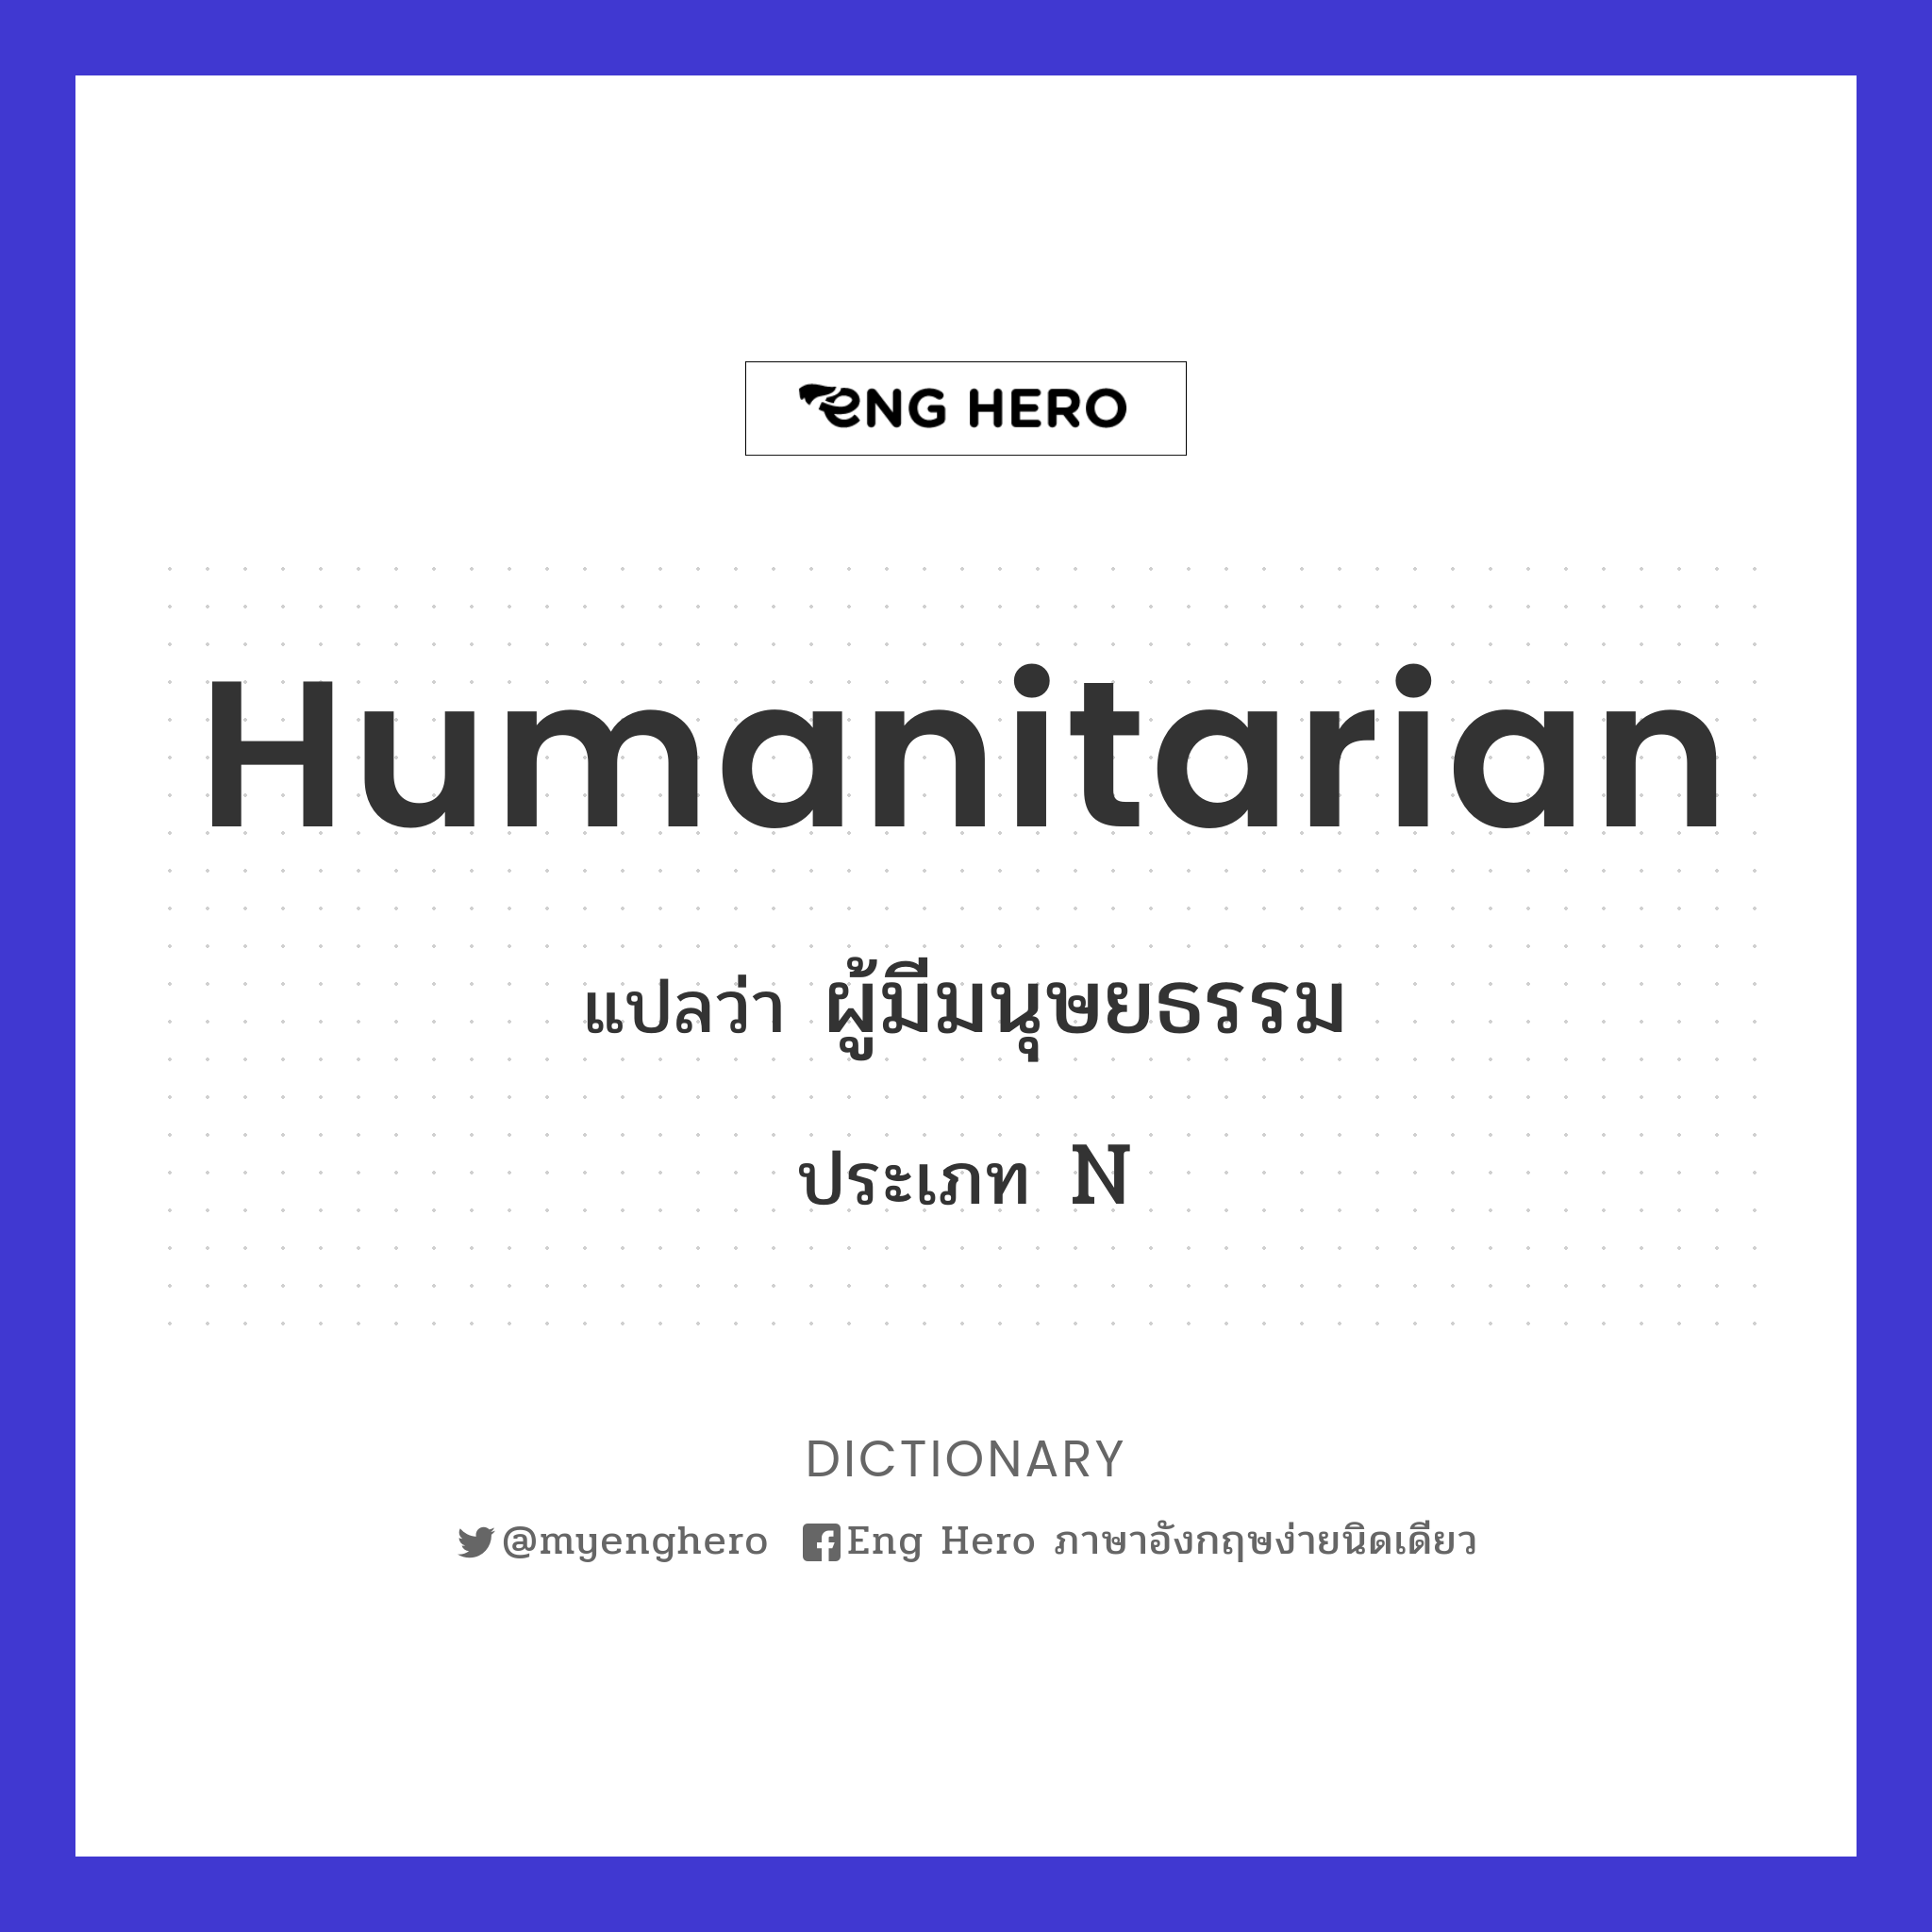 humanitarian